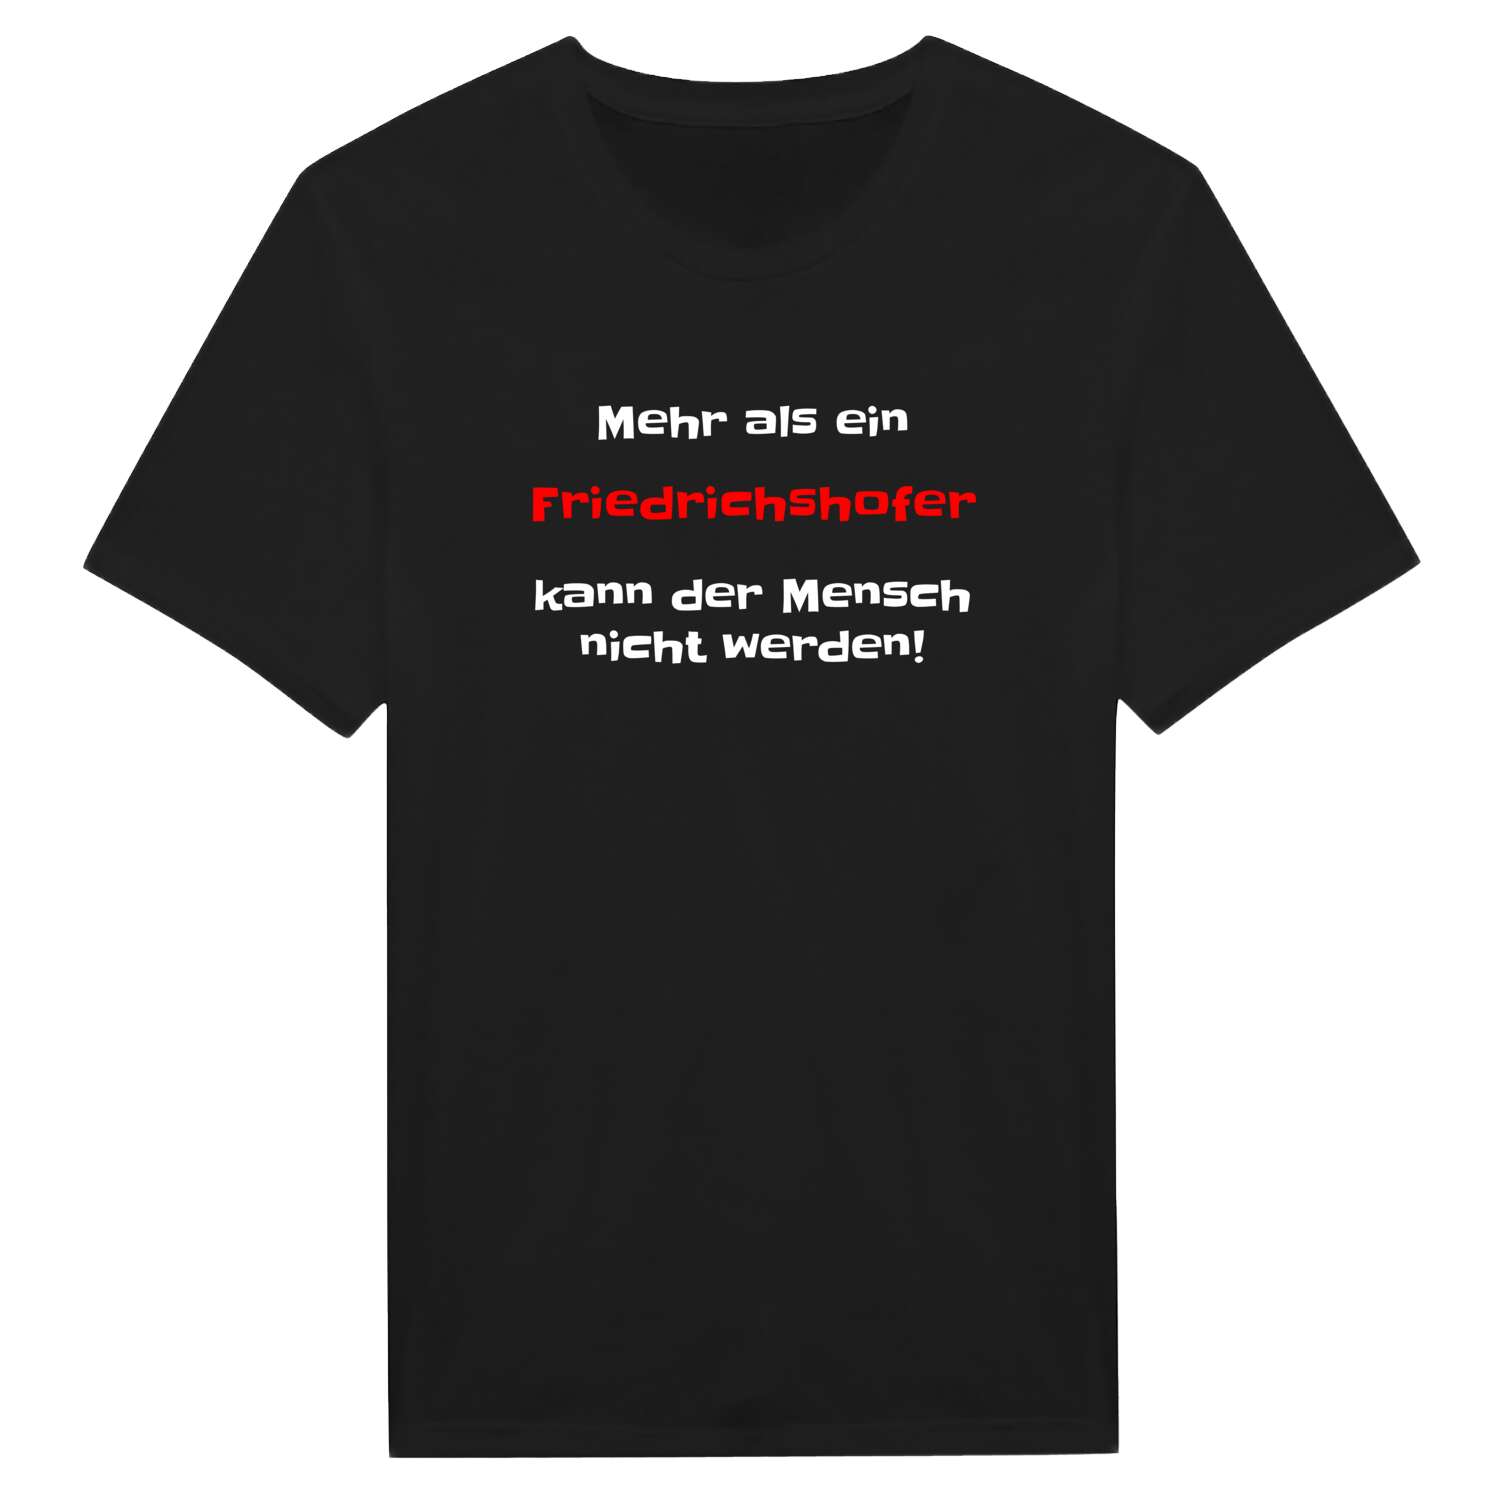 Friedrichshof T-Shirt »Mehr als ein«